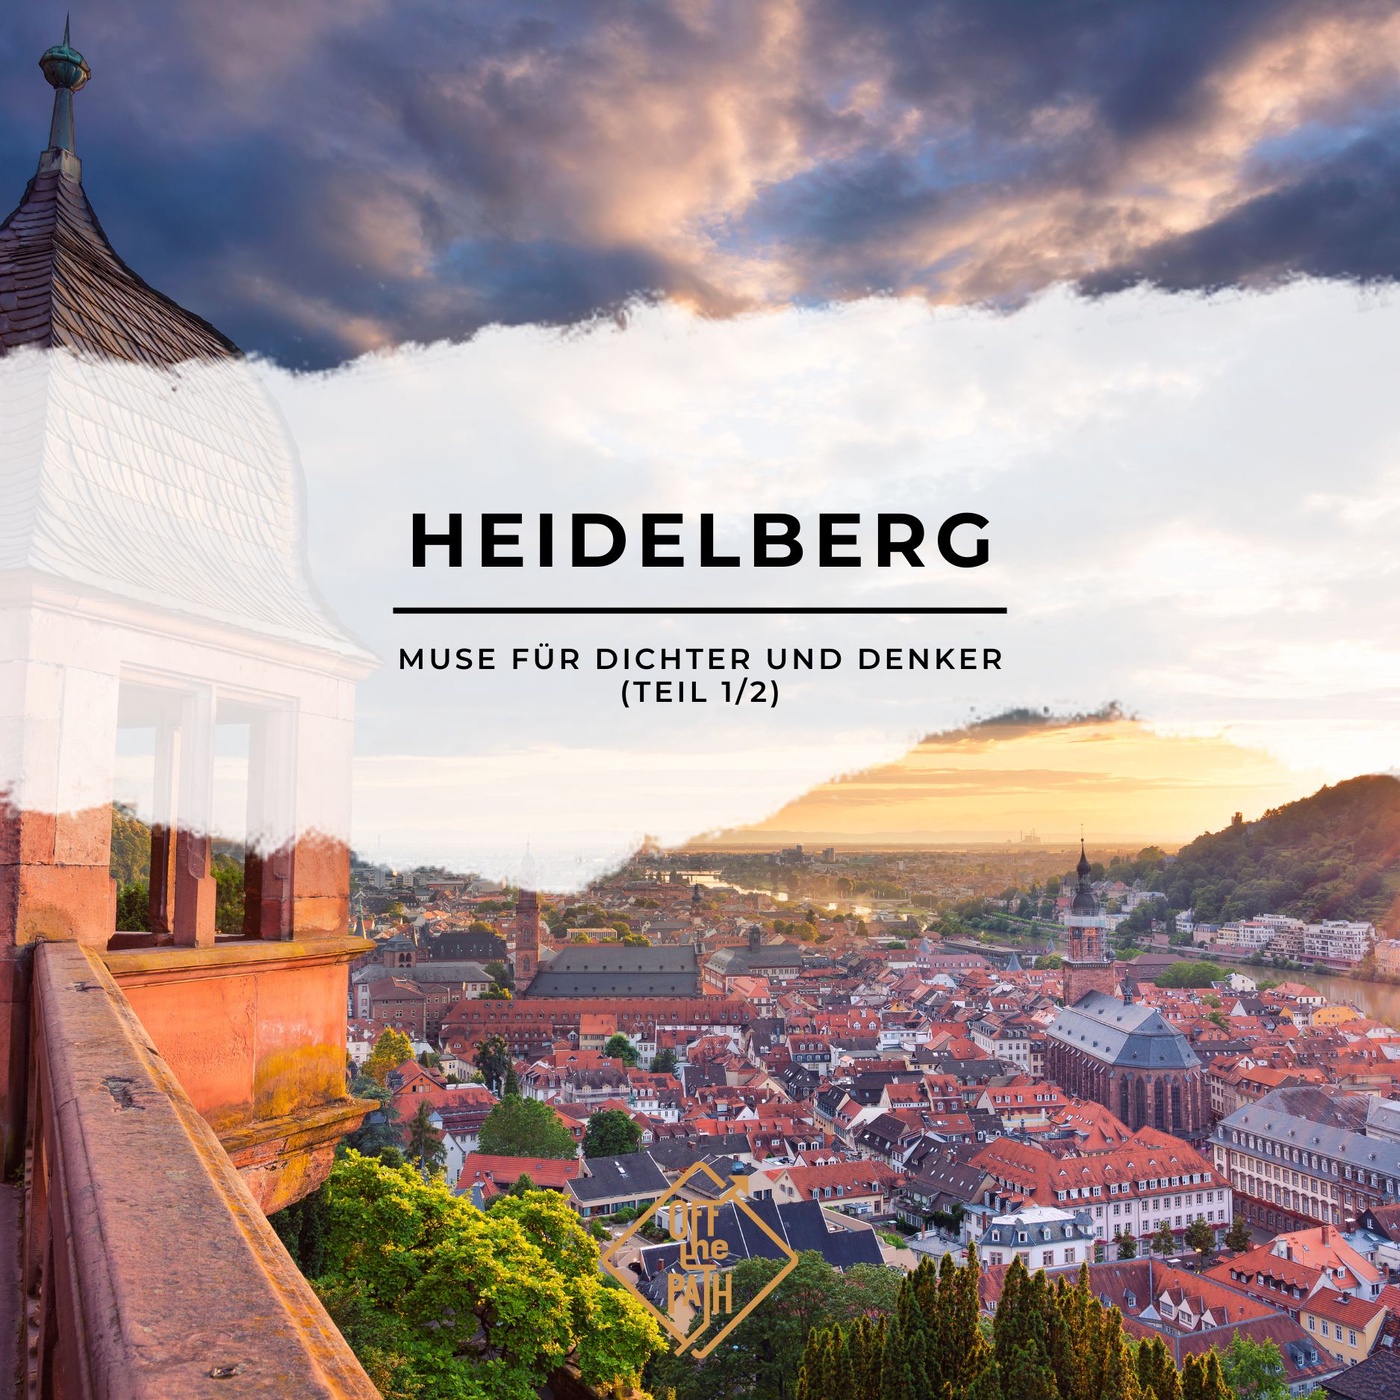 Heidelberg als Muse für Dichter und Denker (Teil 1/2)